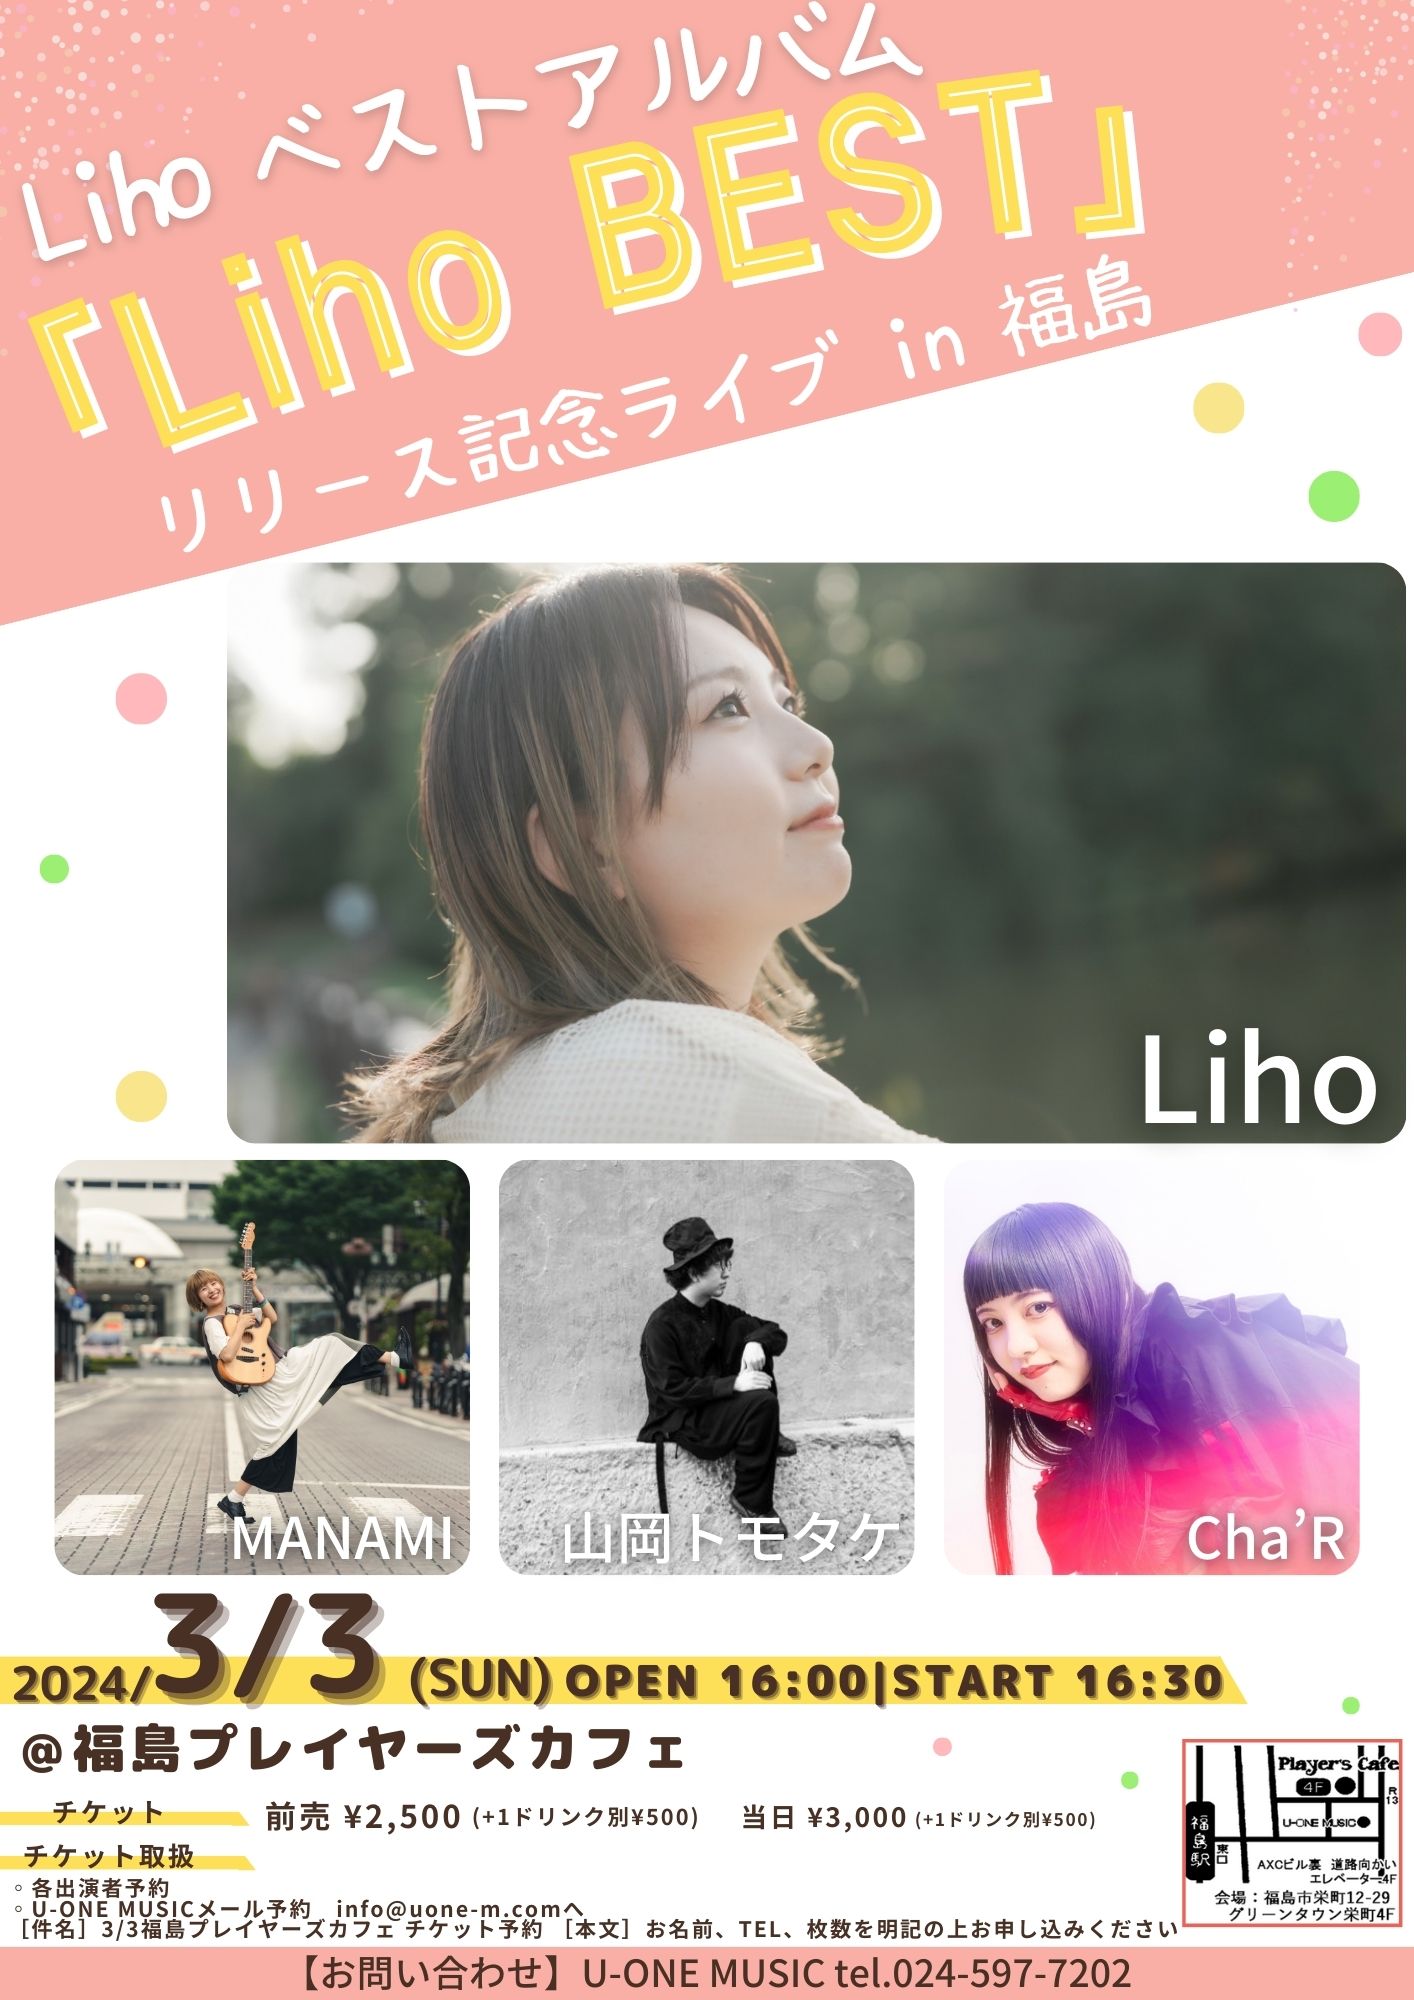 Lihoベストアルバム「Liho BEST 」リリース記念ライブ in 福島